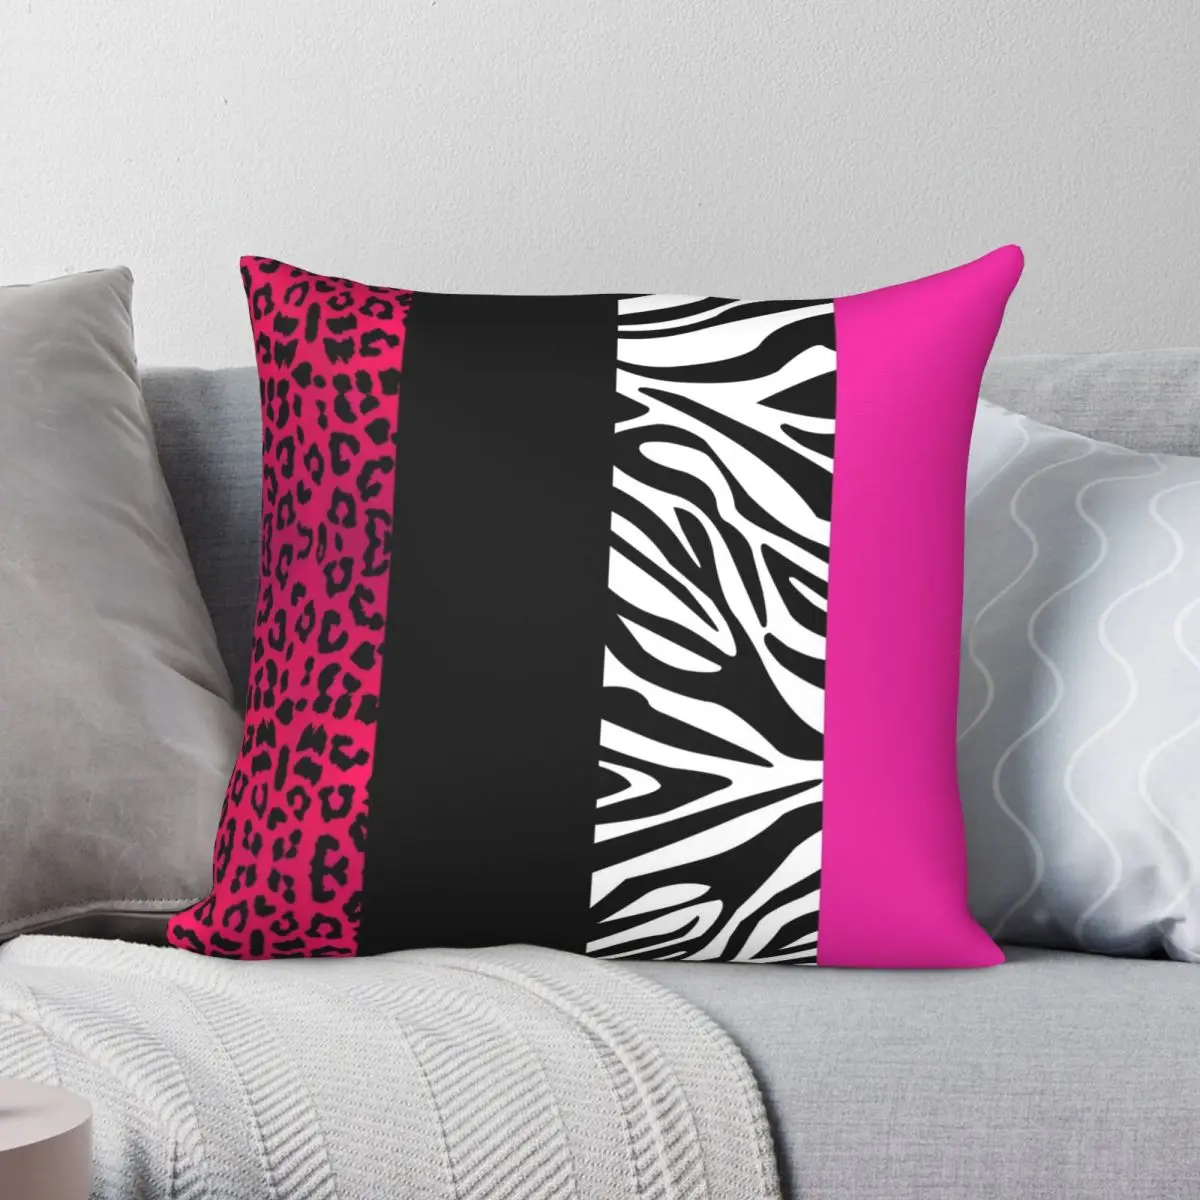 Hot Pink Zebra Stripes Pillowcase Polyester Linen Velvet Pattern Zip Decor Room Cushion Cover